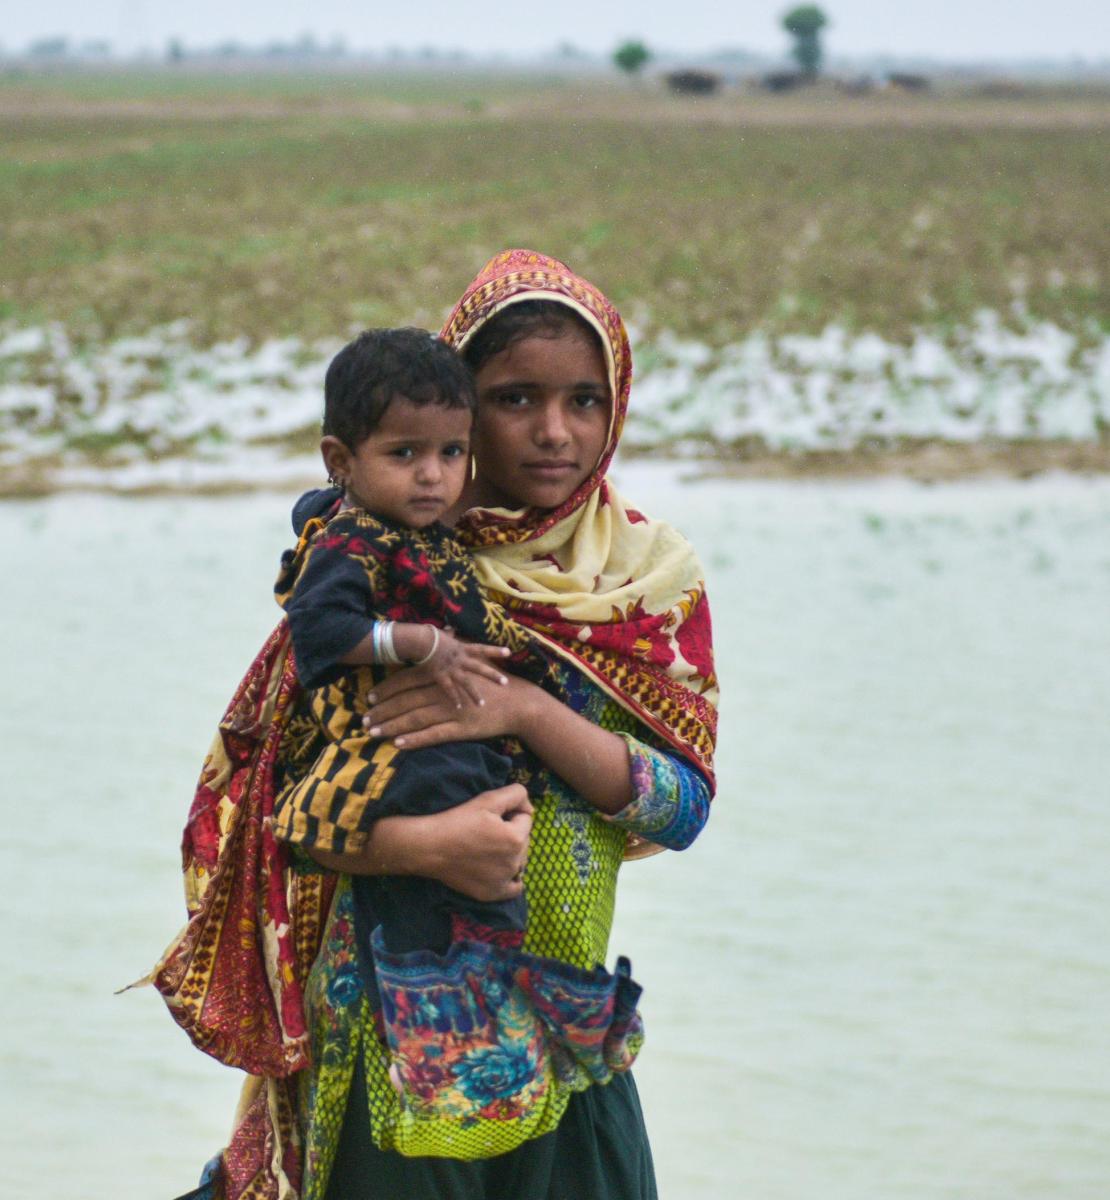 فتاة ترتدي وشاحًا تحمل طفلًا صغيرًا بين ذراعيها أمام بركة ماء.